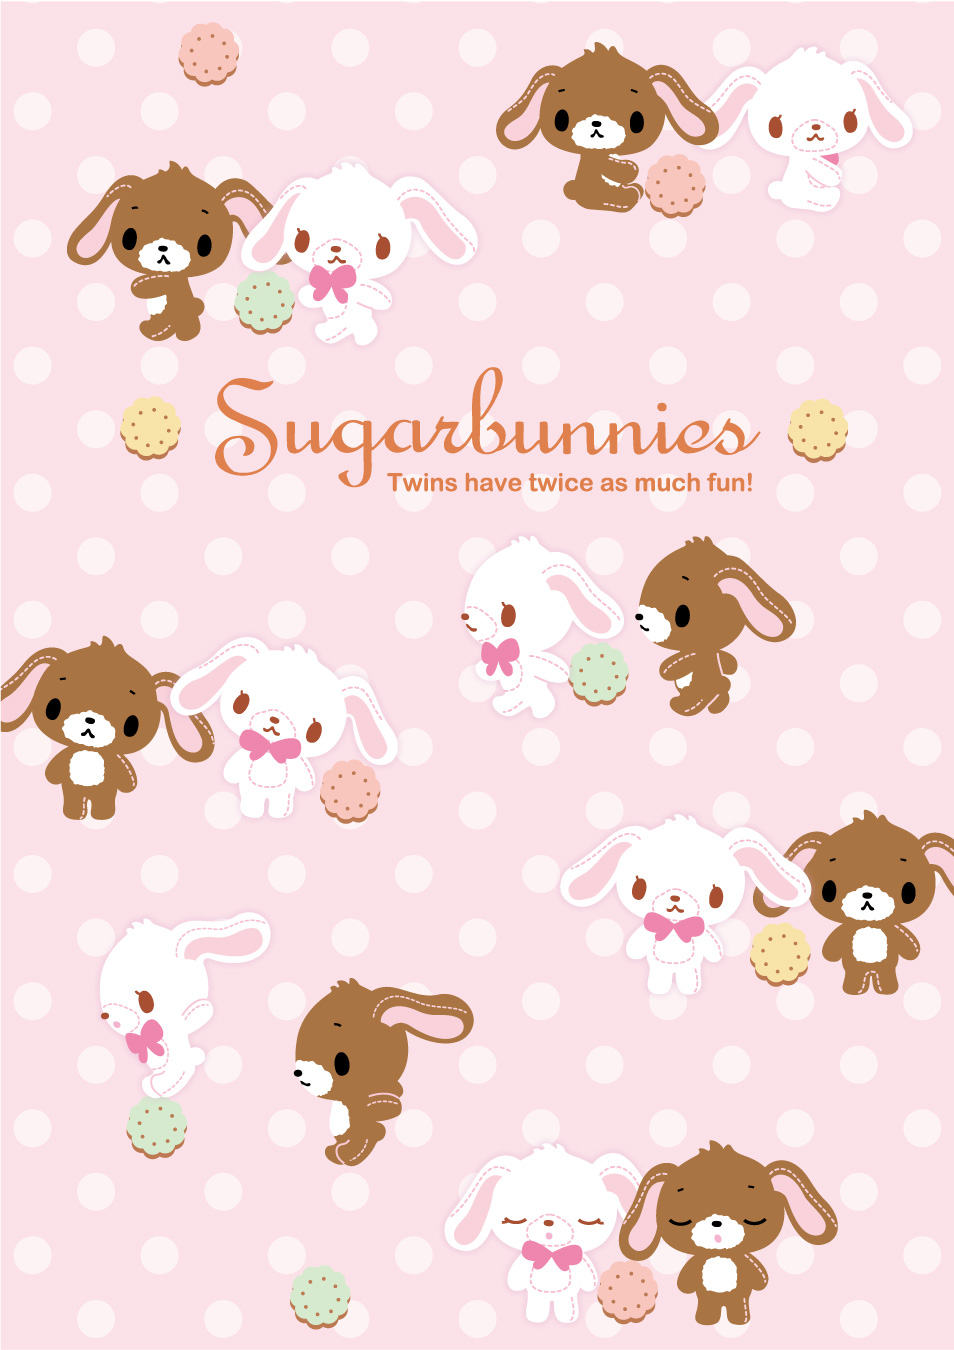 sugarbunnies   widgetopia homescreen widgets for iPhone  iPad  Android